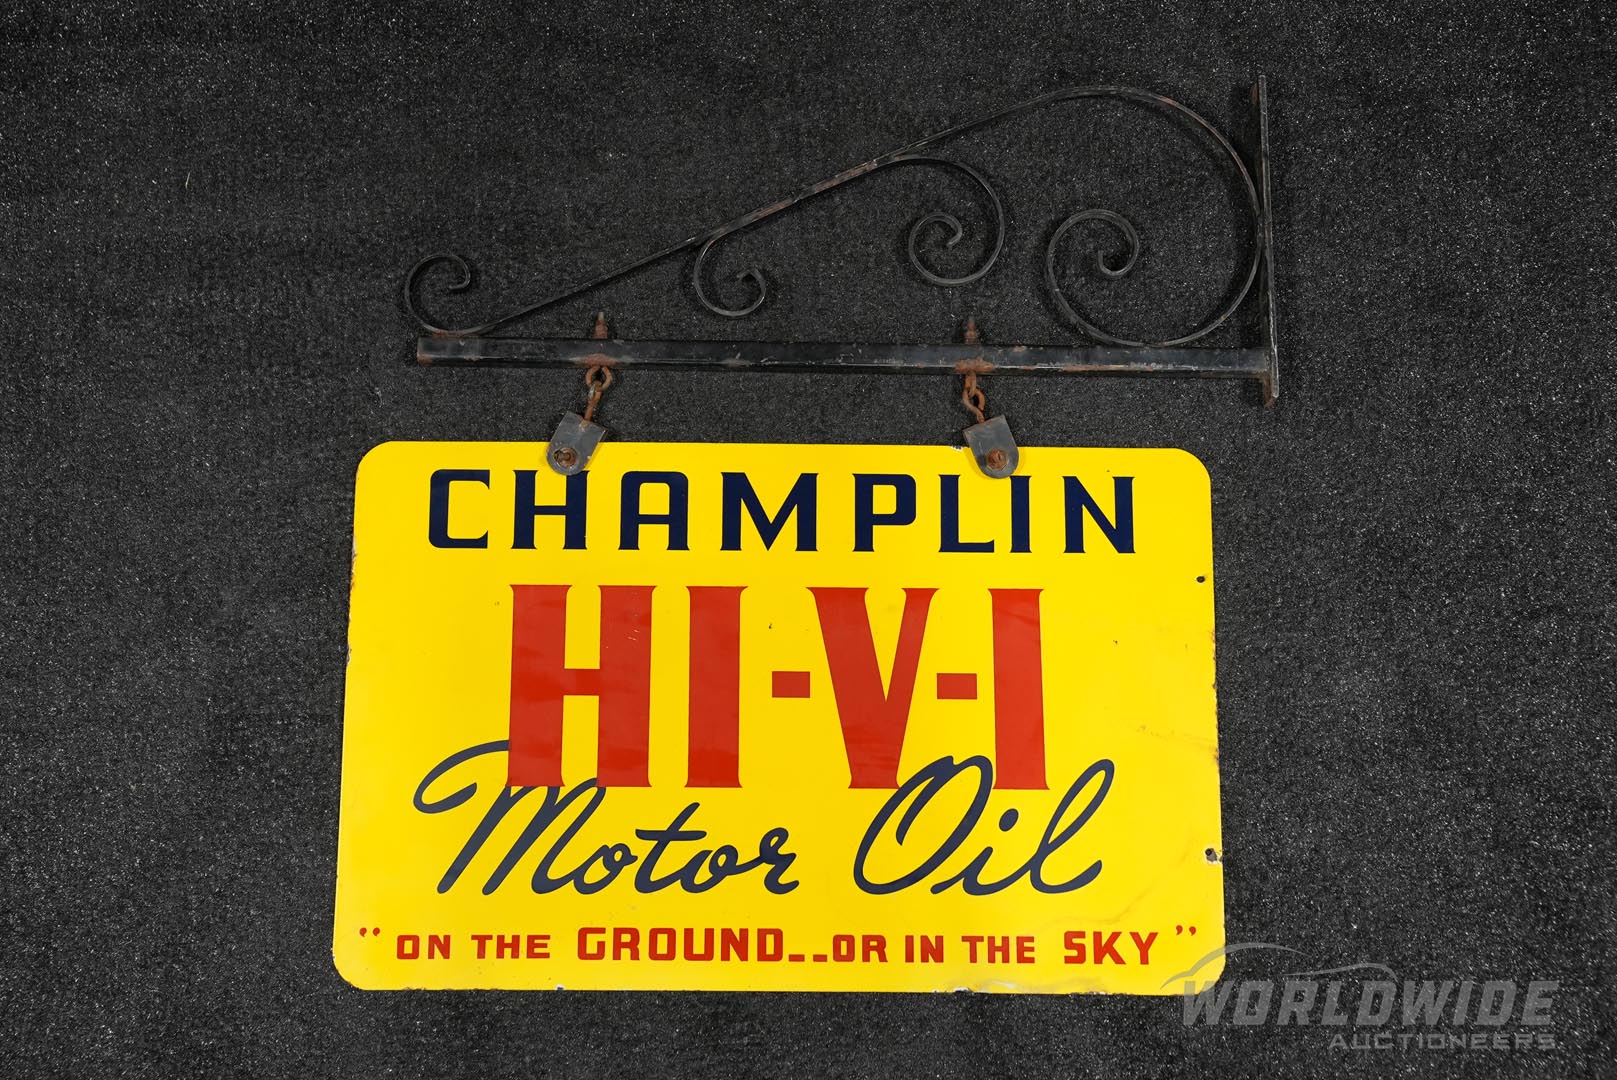 Champlin HI-V-I Motor Oil Double-Sided Porcelain Sign with Hanger